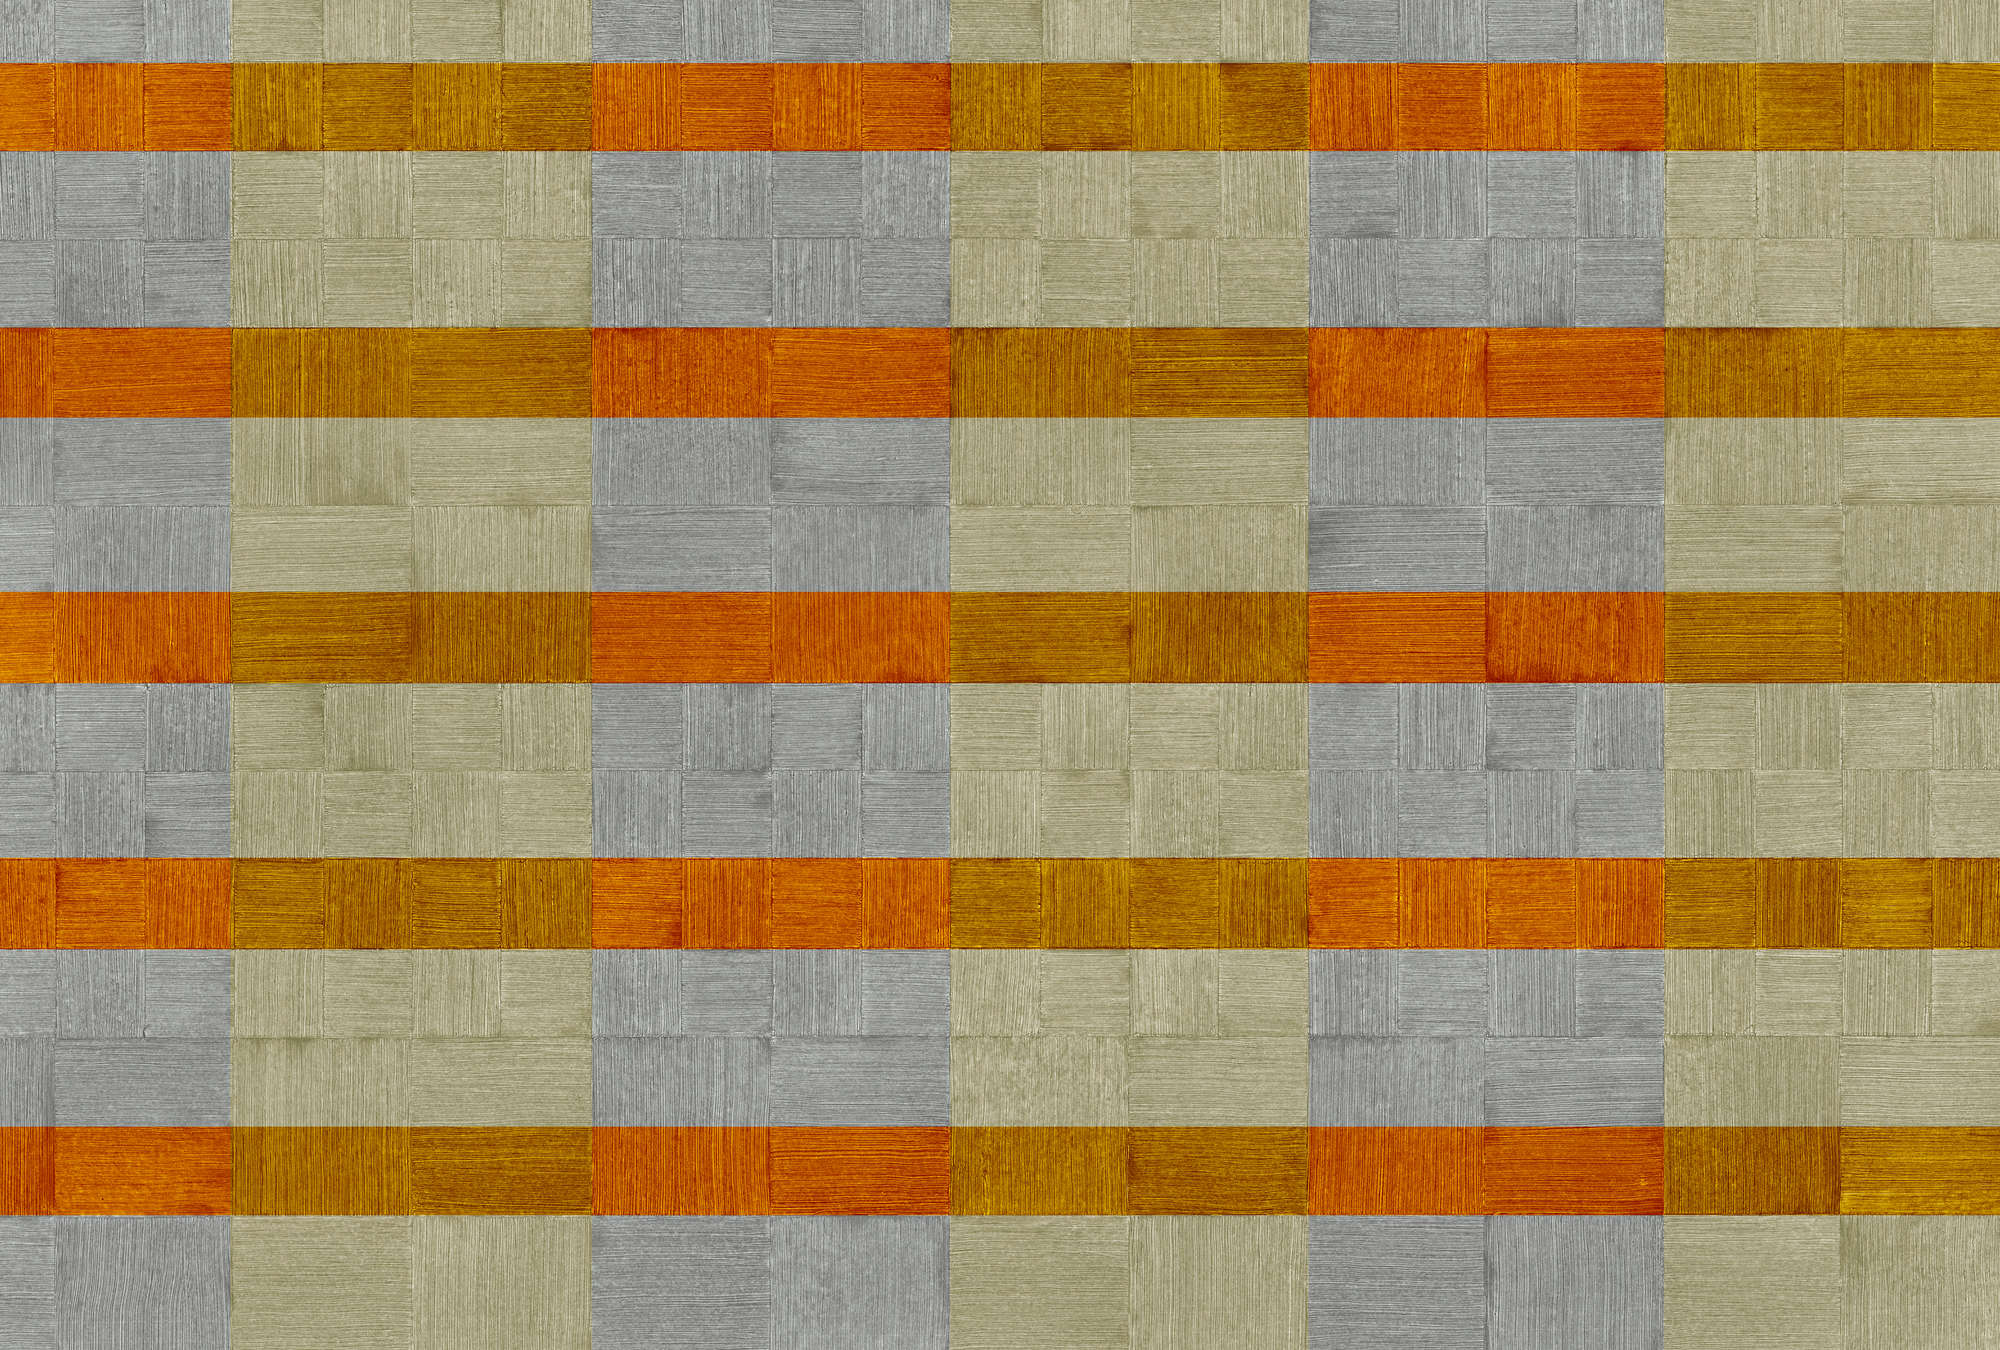             Papier peint rayures & motifs structurés à carreaux - gris, orange, marron
        